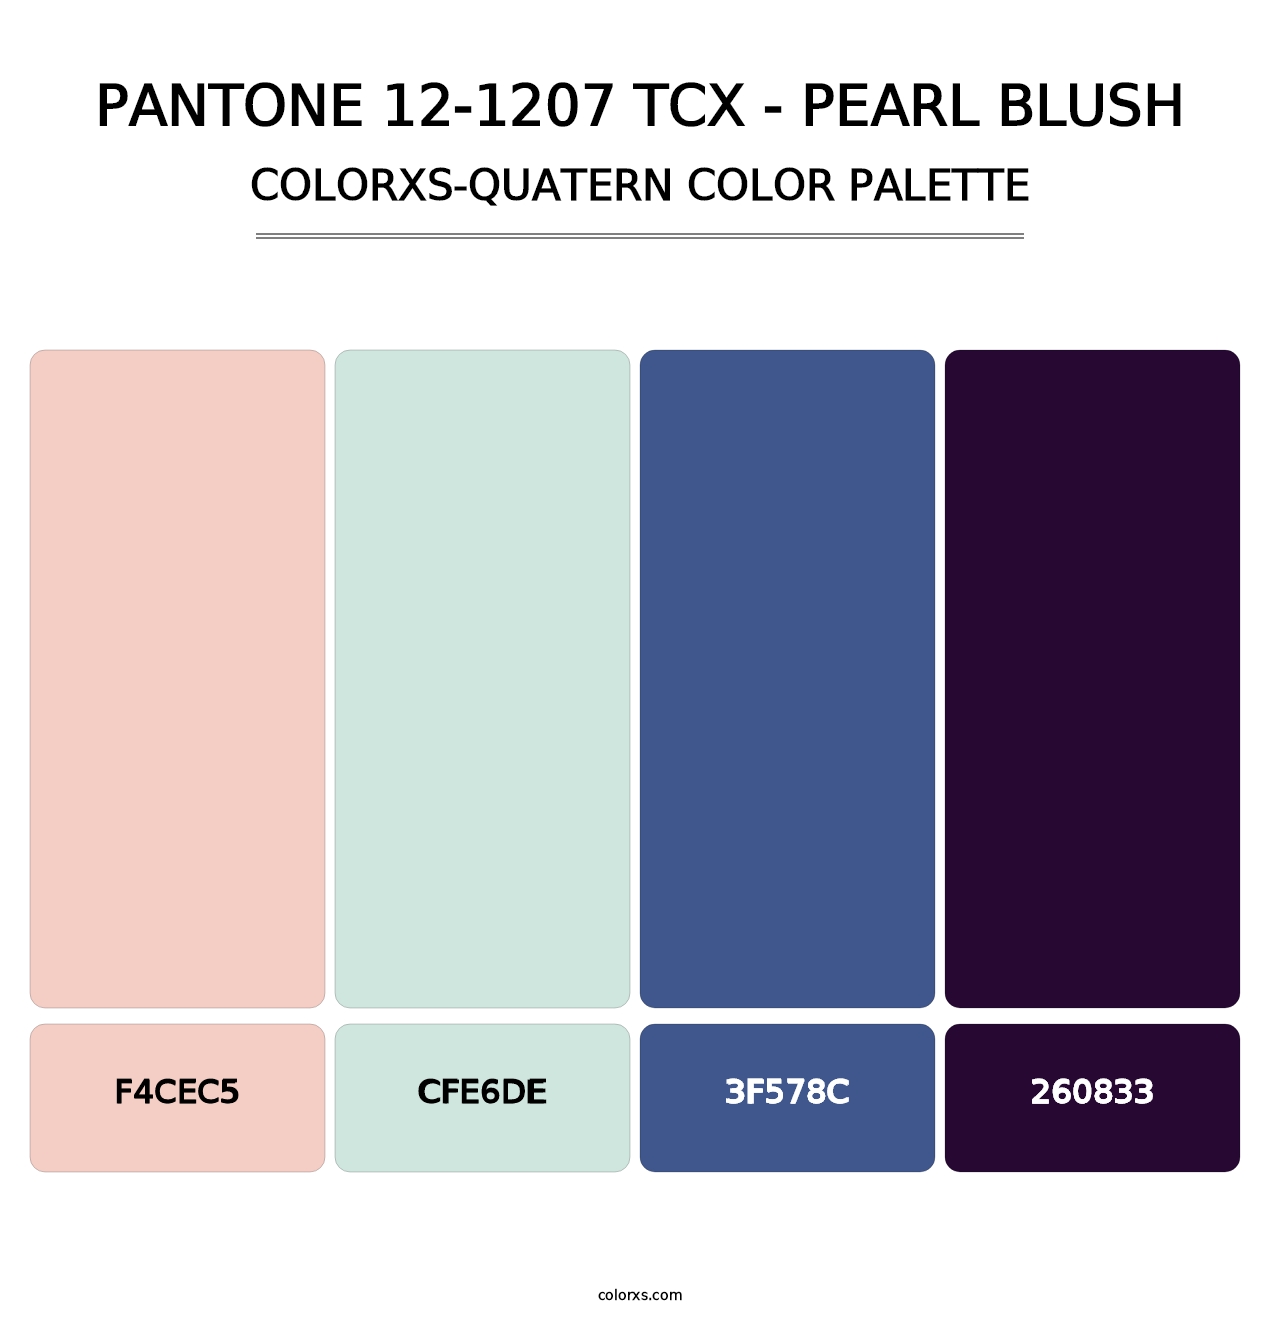 PANTONE 12-1207 TCX - Pearl Blush - Colorxs Quatern Palette